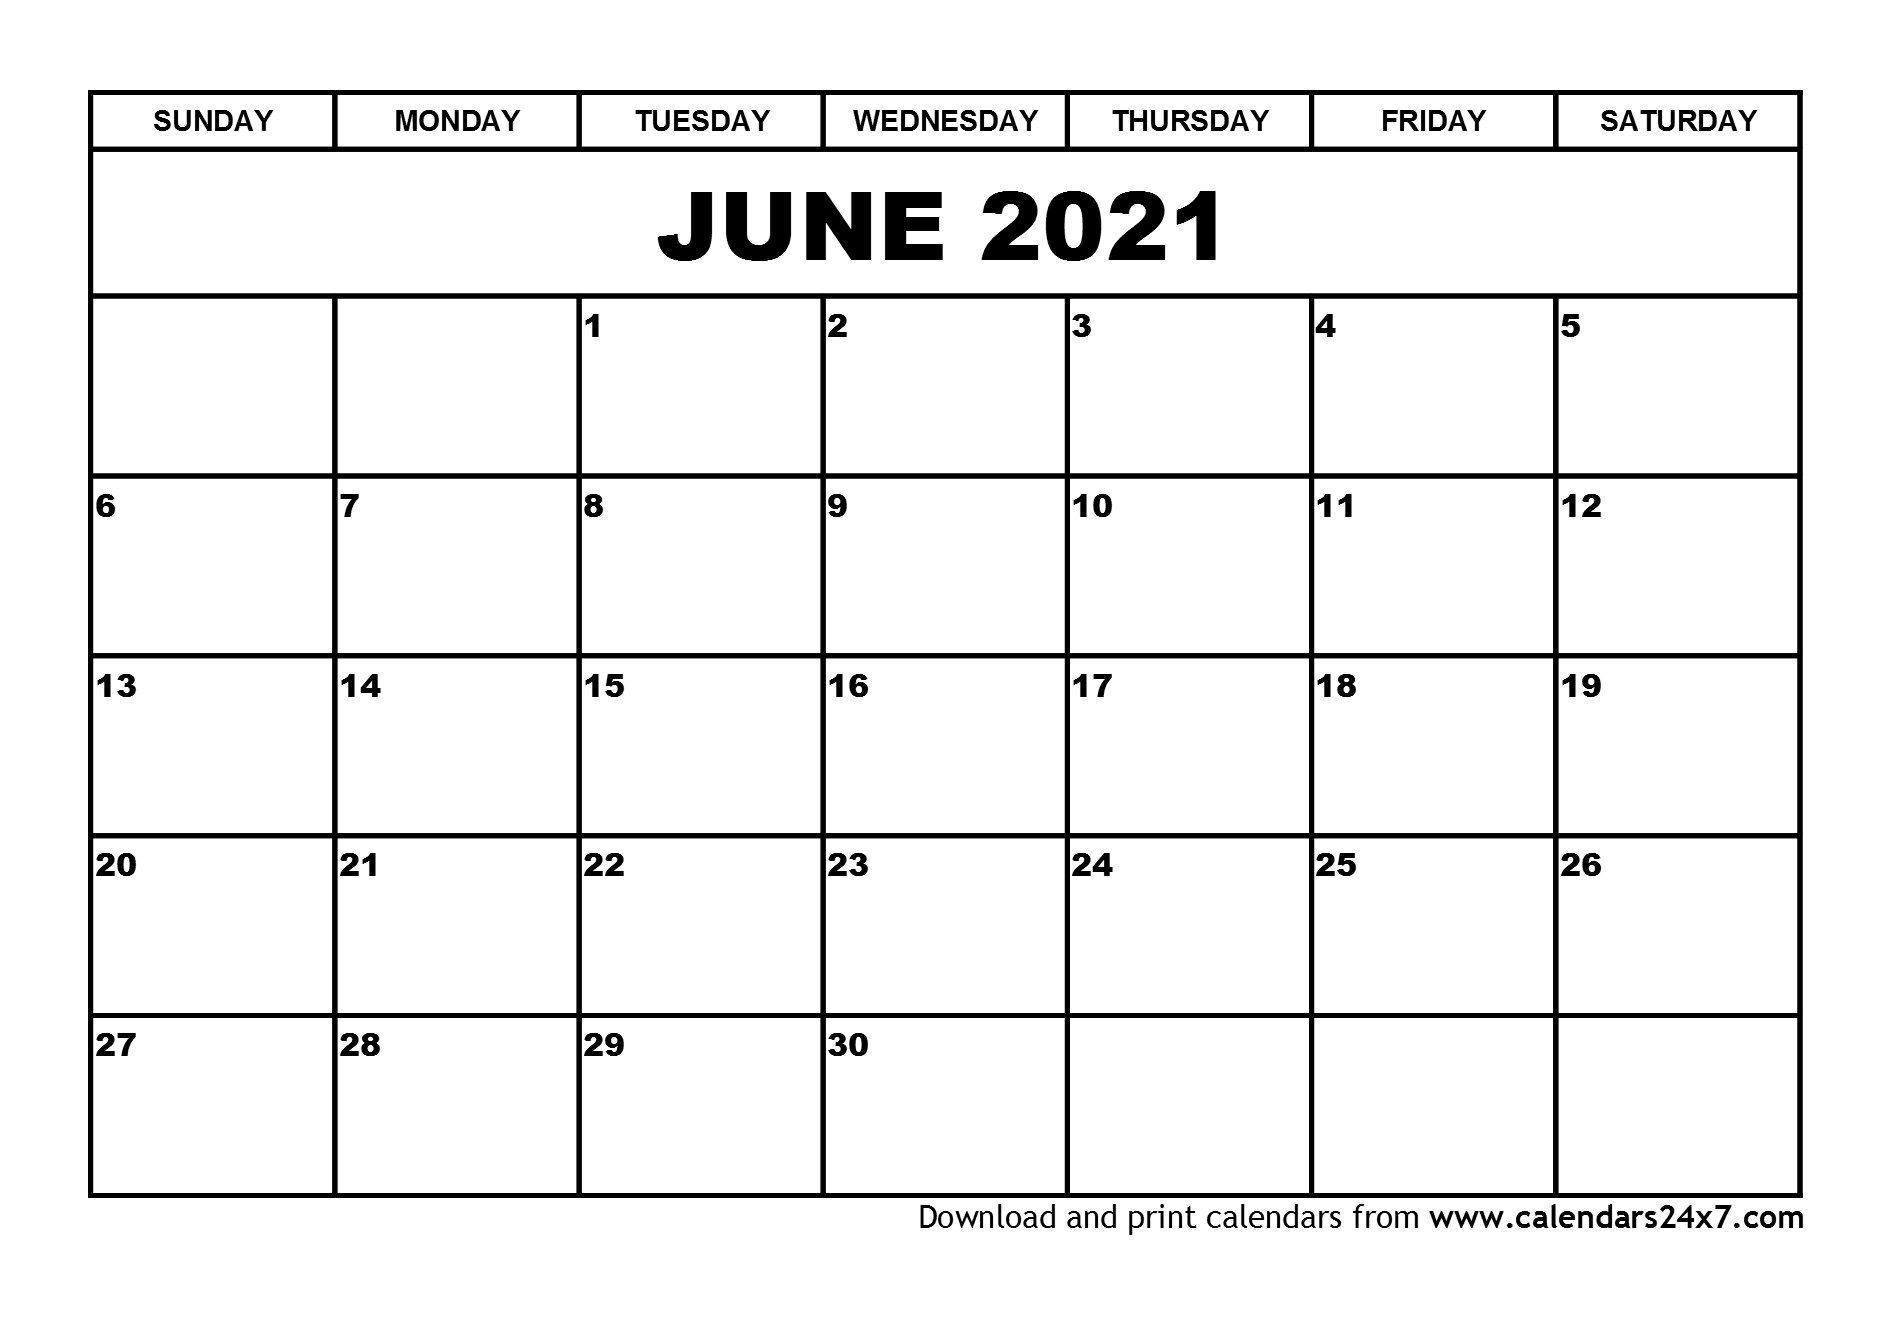 June 2021 Calendar & July 2021 Calendar